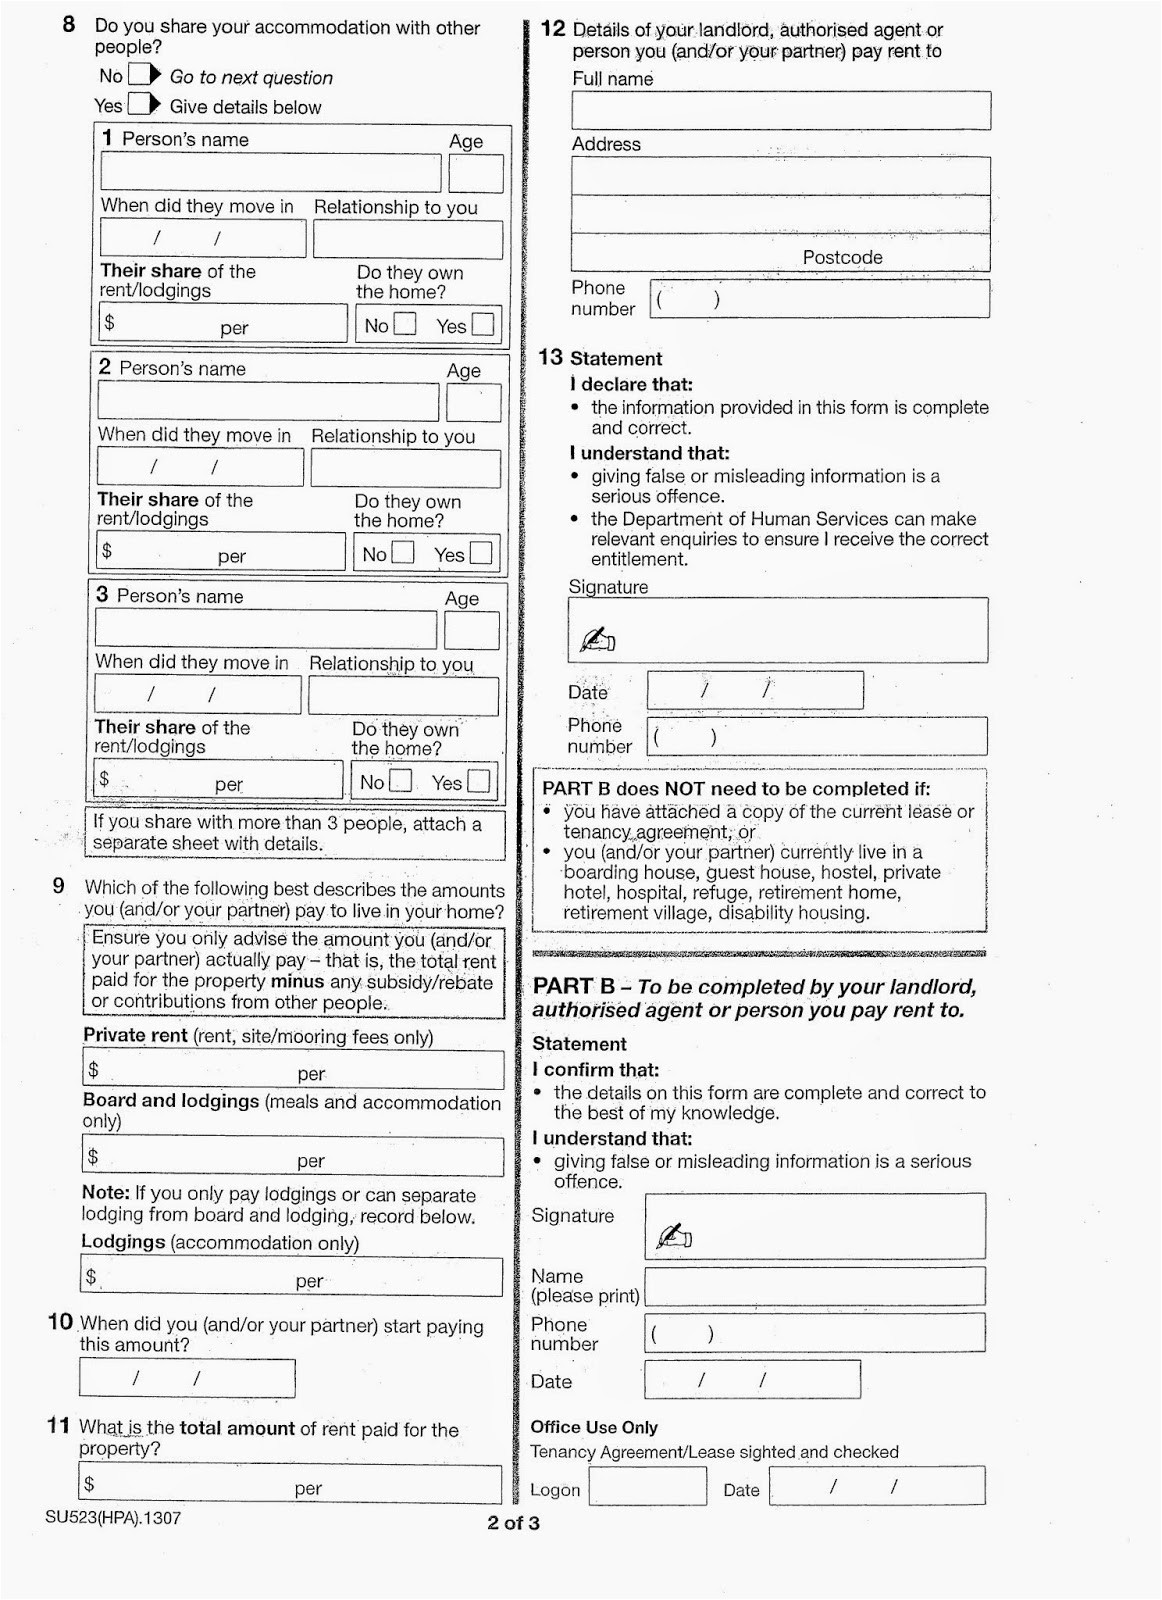 centrelink rent certificate form su523